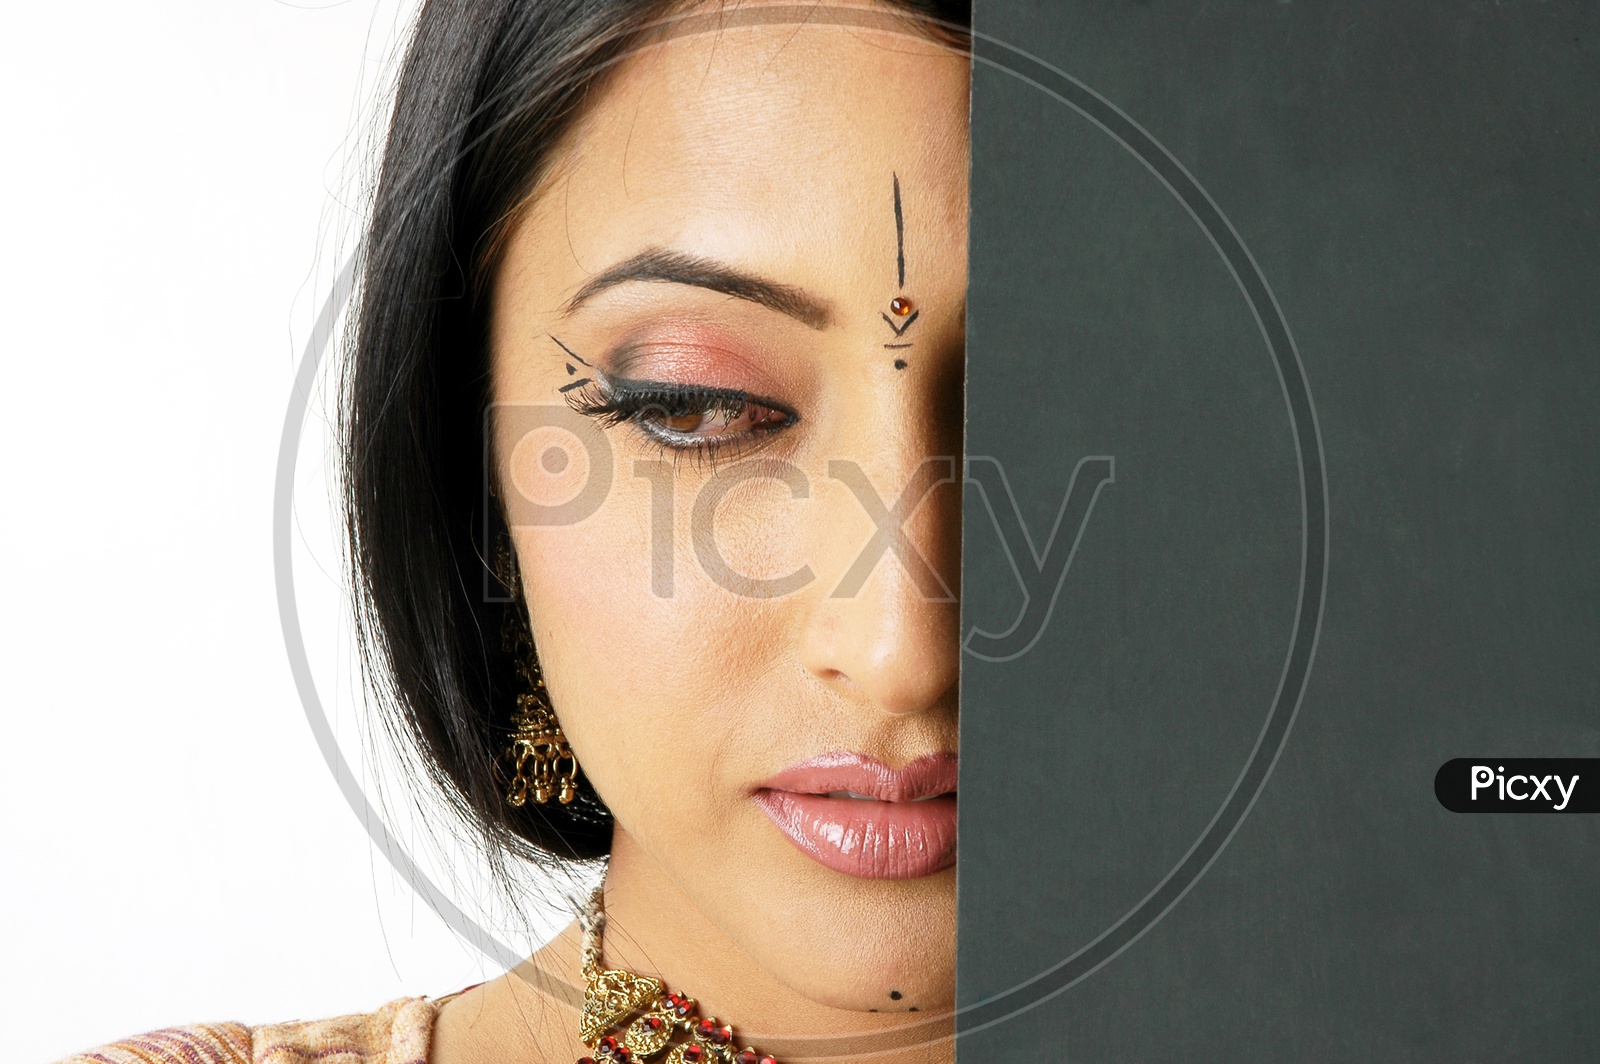 Indian Woman wearing eye makeup